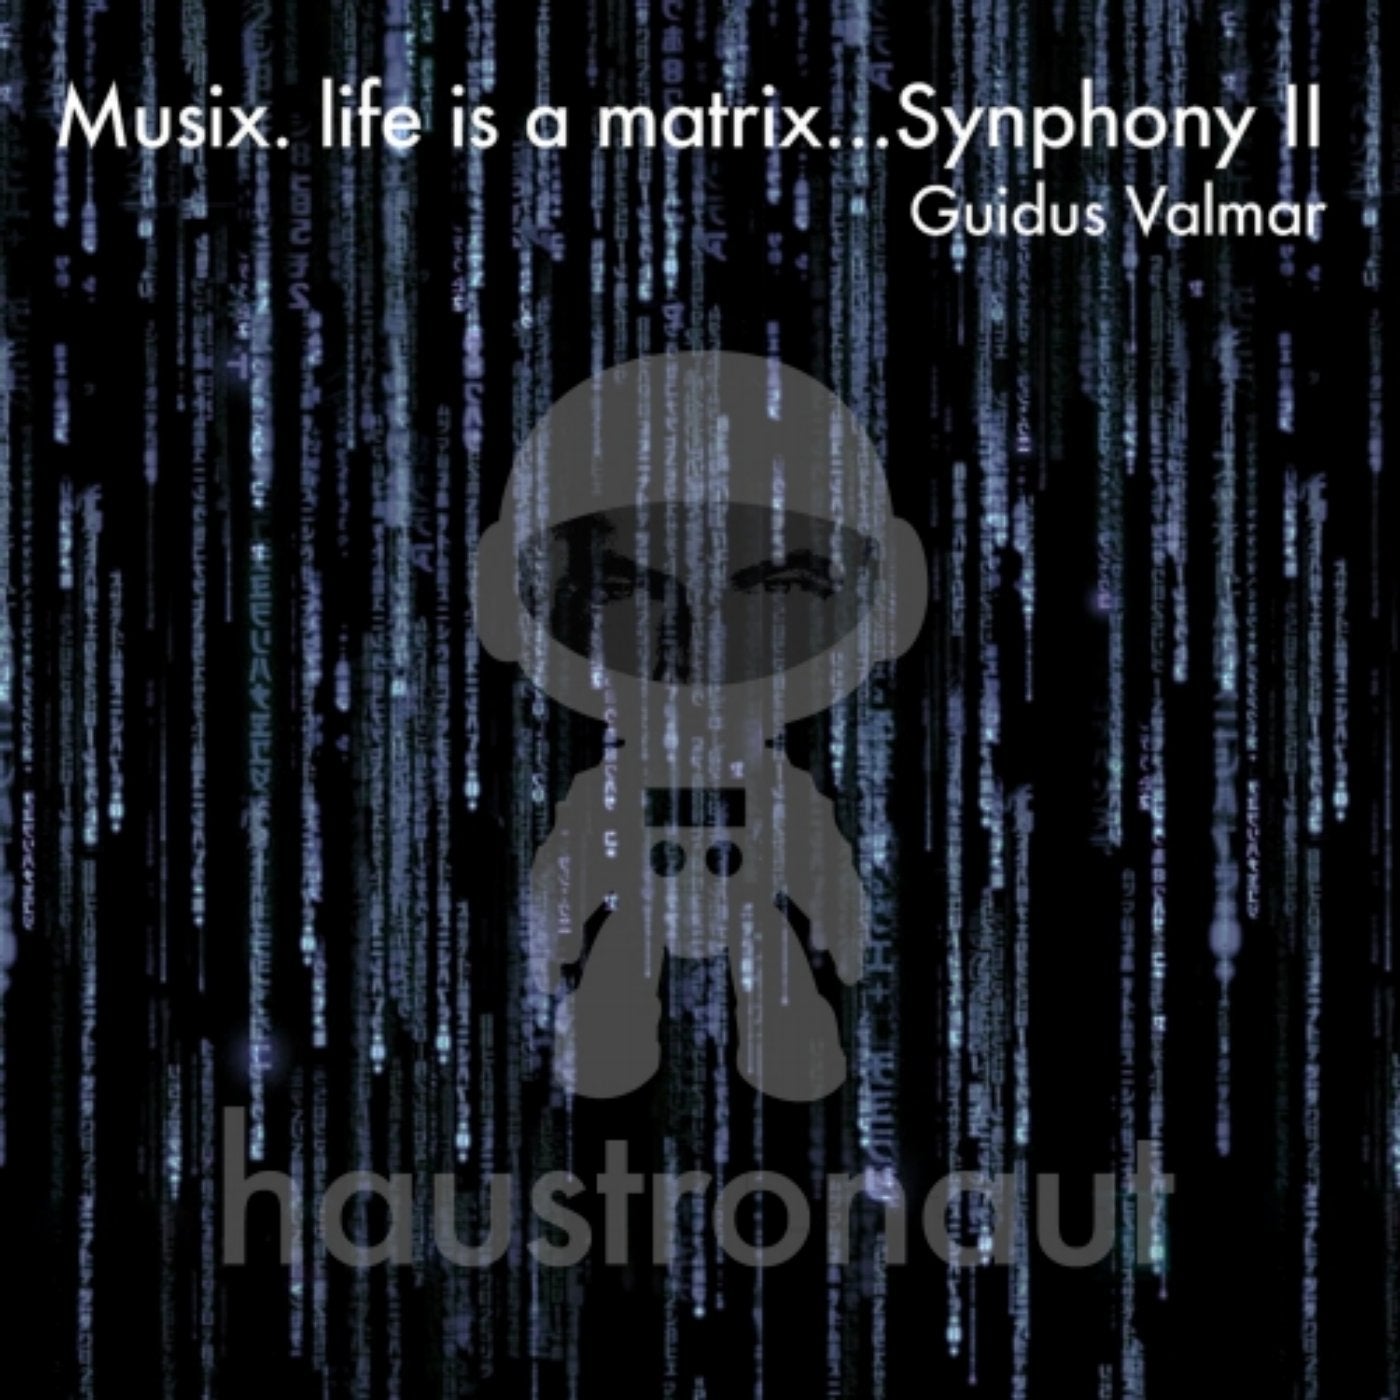 Musix. life is a matrix...Synphony II